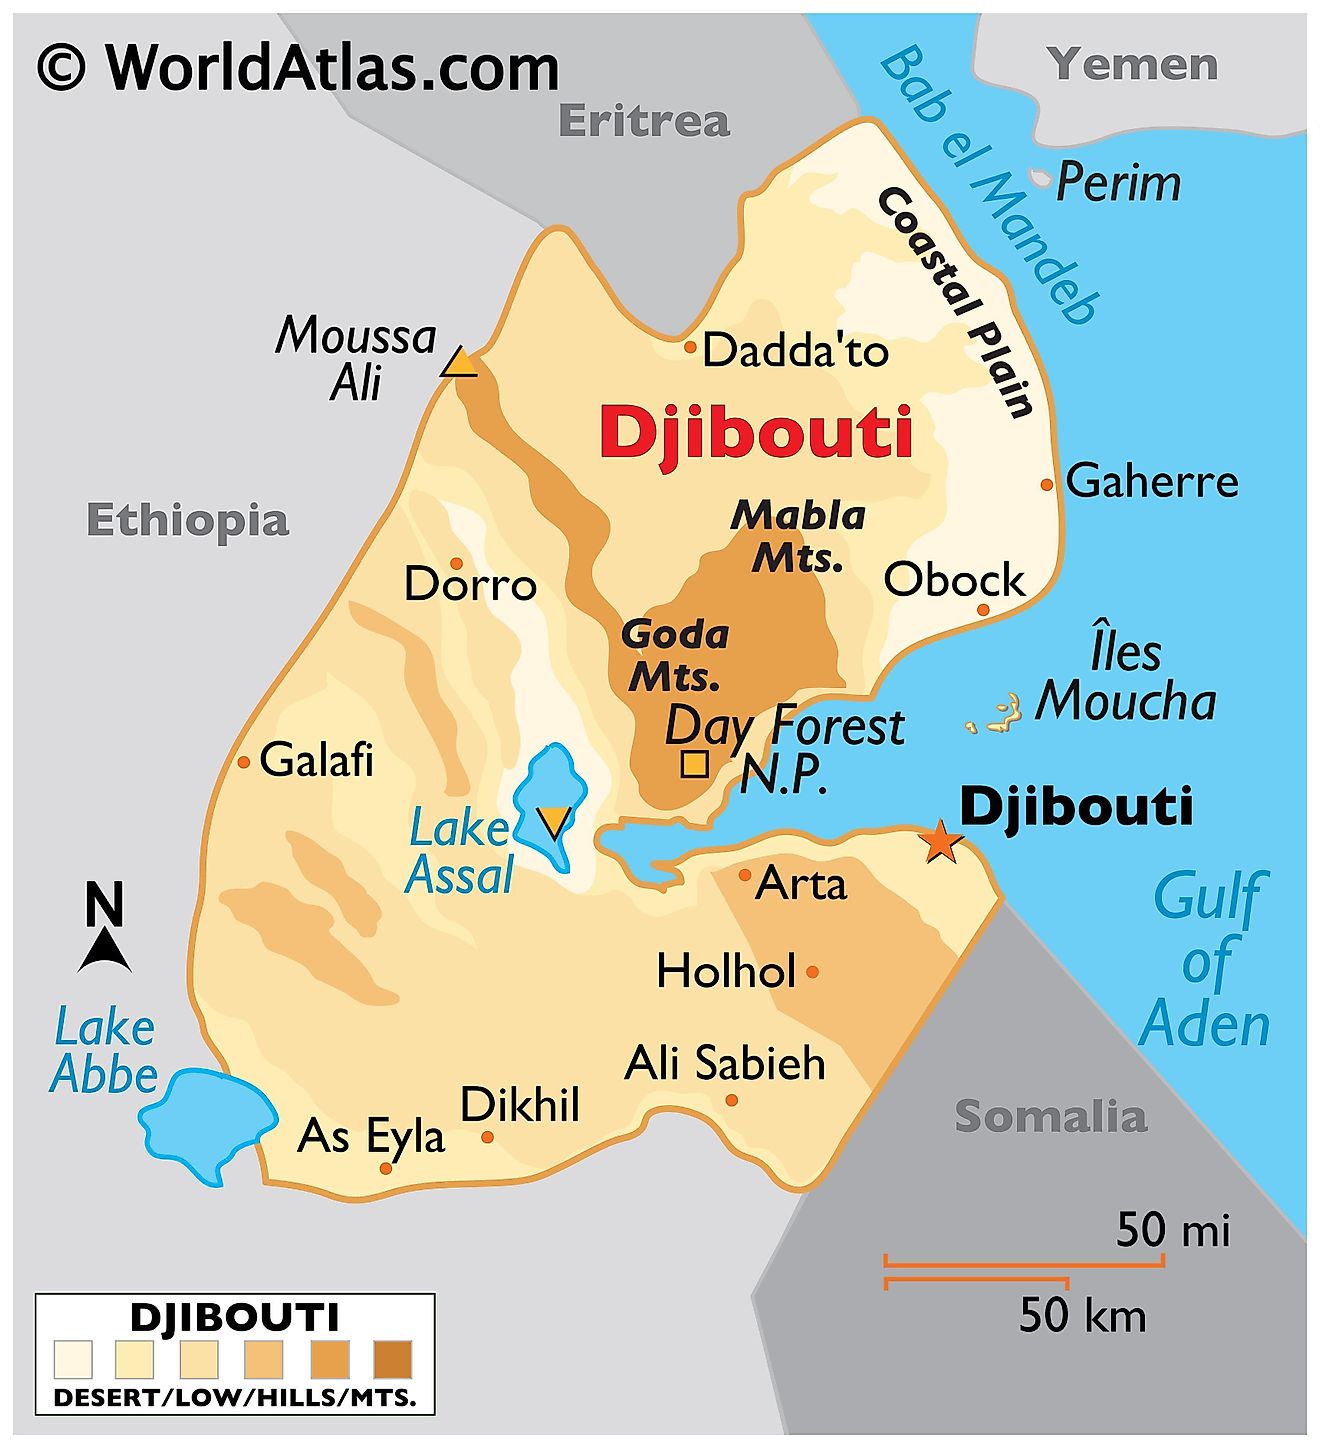 Mapa físico de Djibouti con límites estatales, relieve, cadenas montañosas, lagos principales y ciudades importantes.